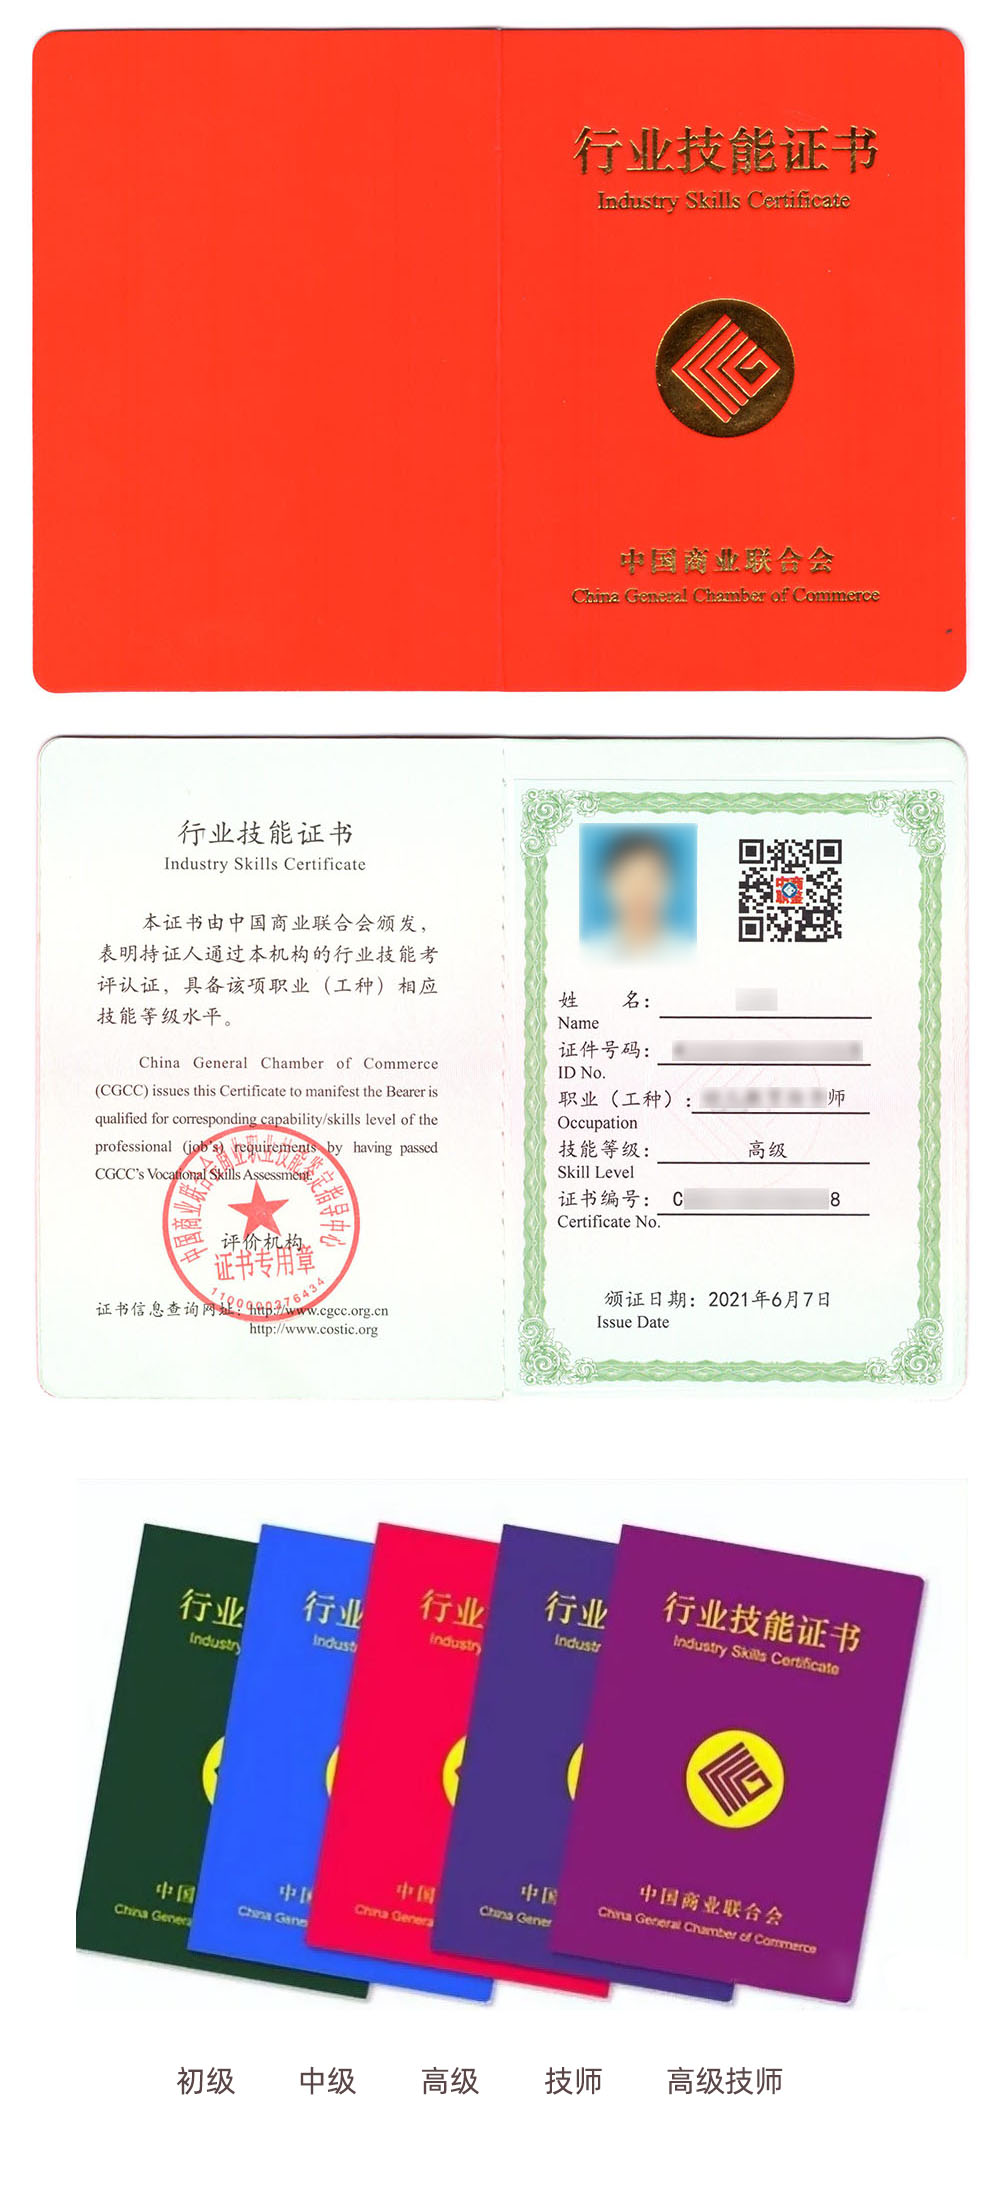 中国商业联合会商业职业技能鉴定中心 行业技能证书 现代物流管理师证证书样本